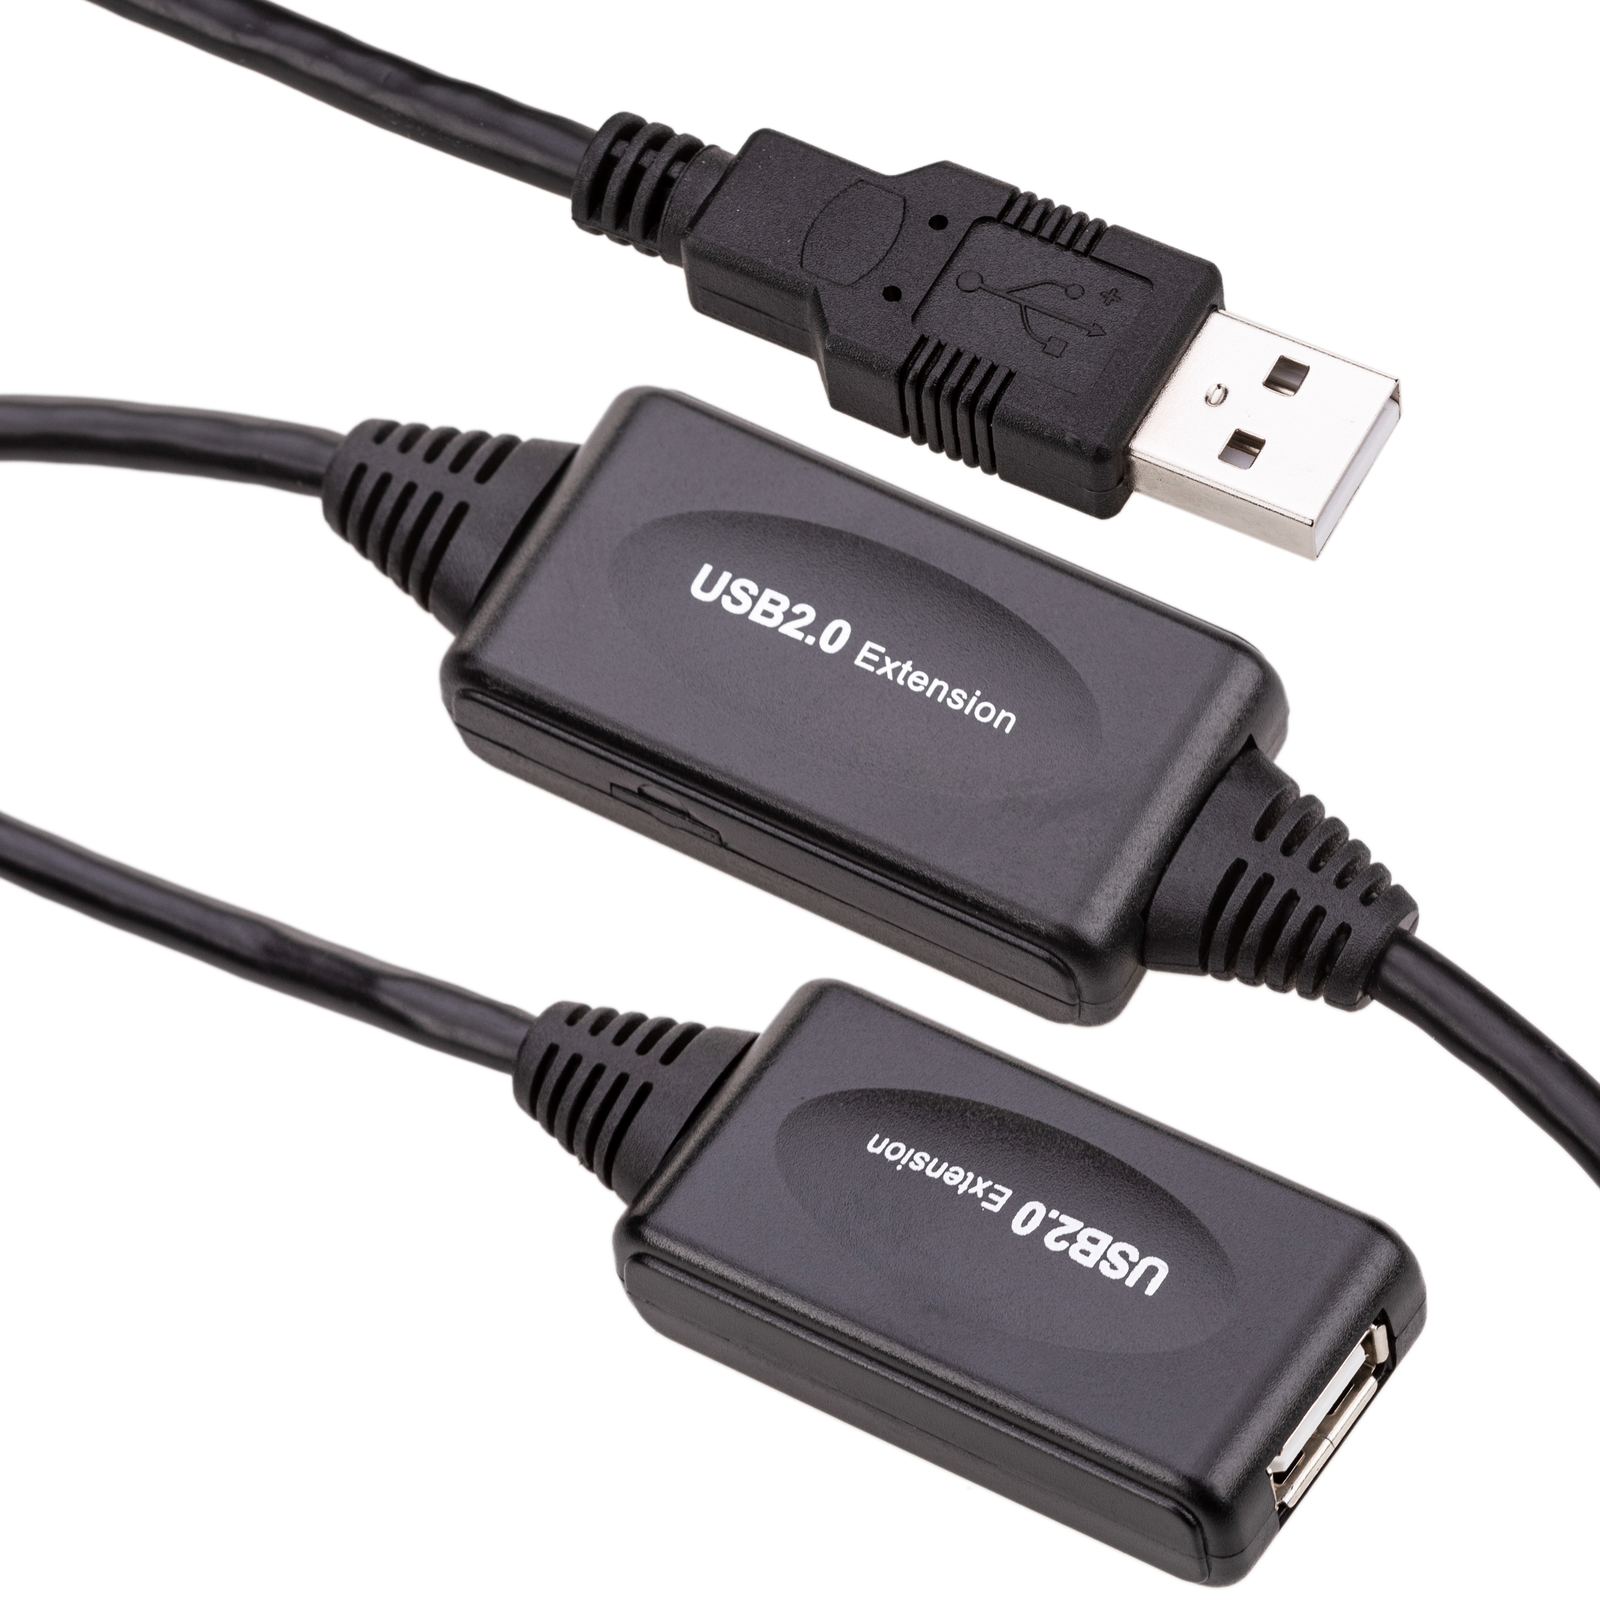 Cable de extensión USB 2.0 con alimentación de 30m - Cablematic